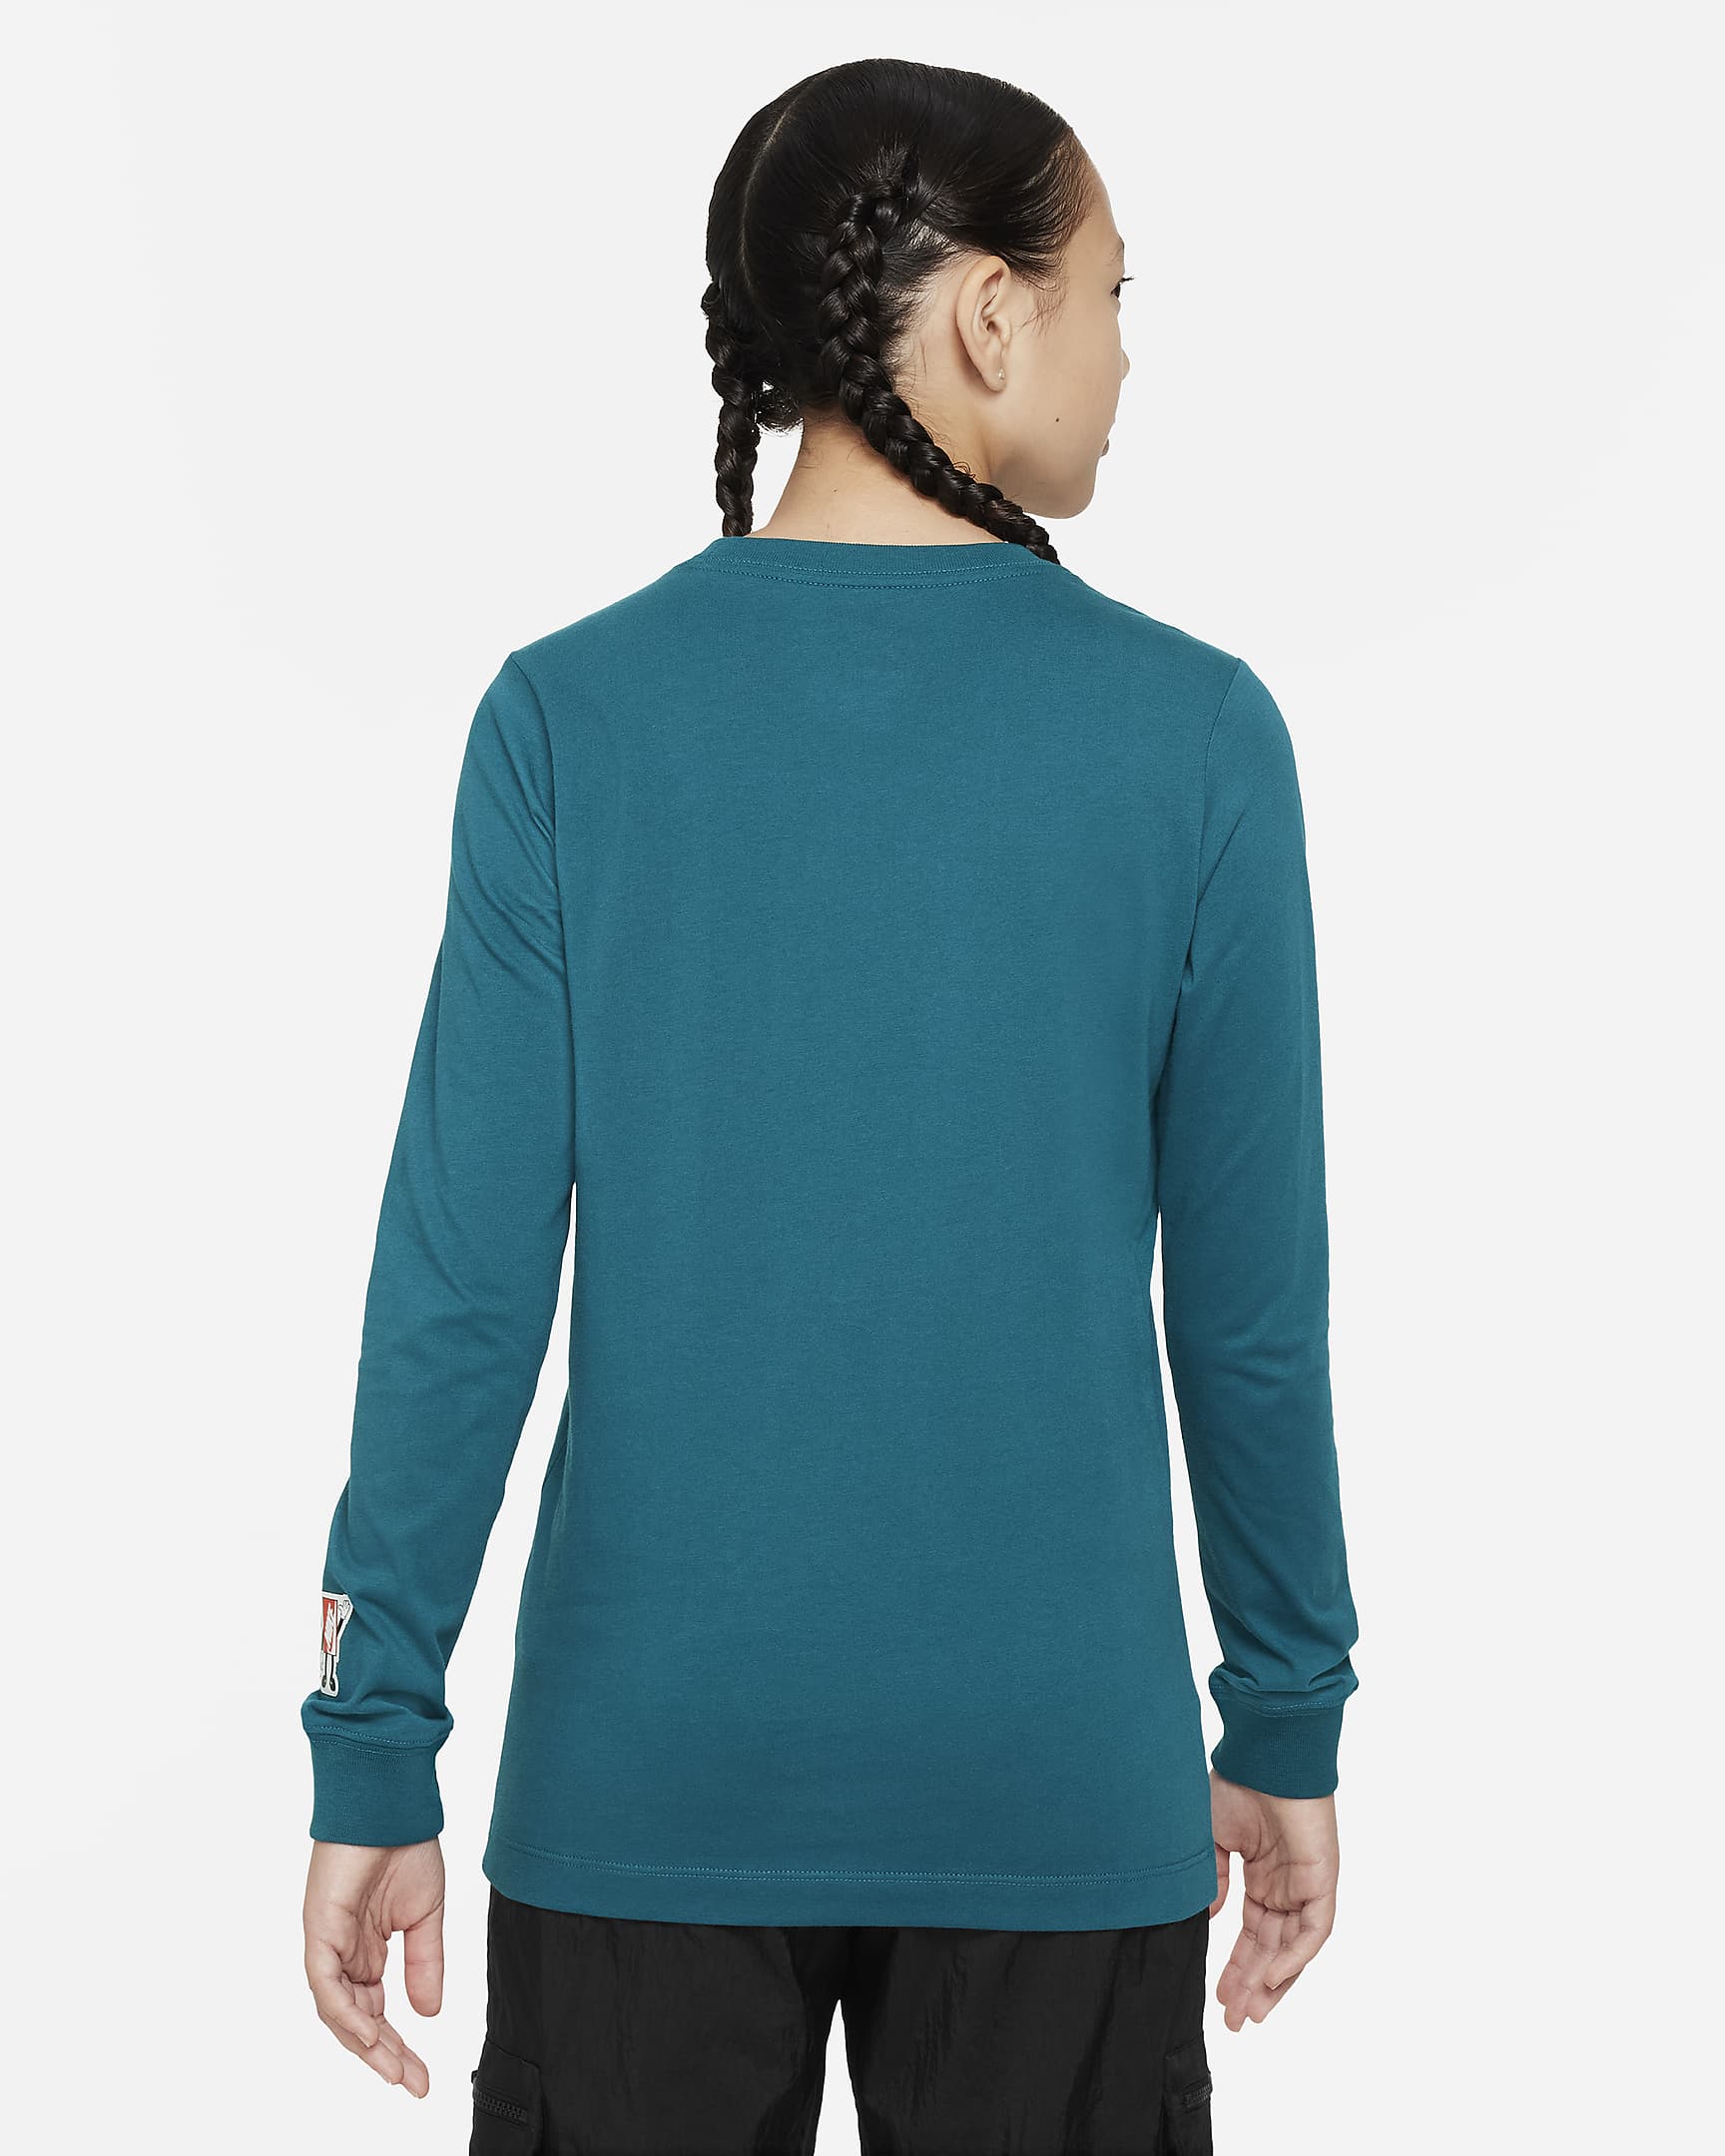 Nike Sportswear Older Kids' Long-Sleeve T-Shirt. Nike ID